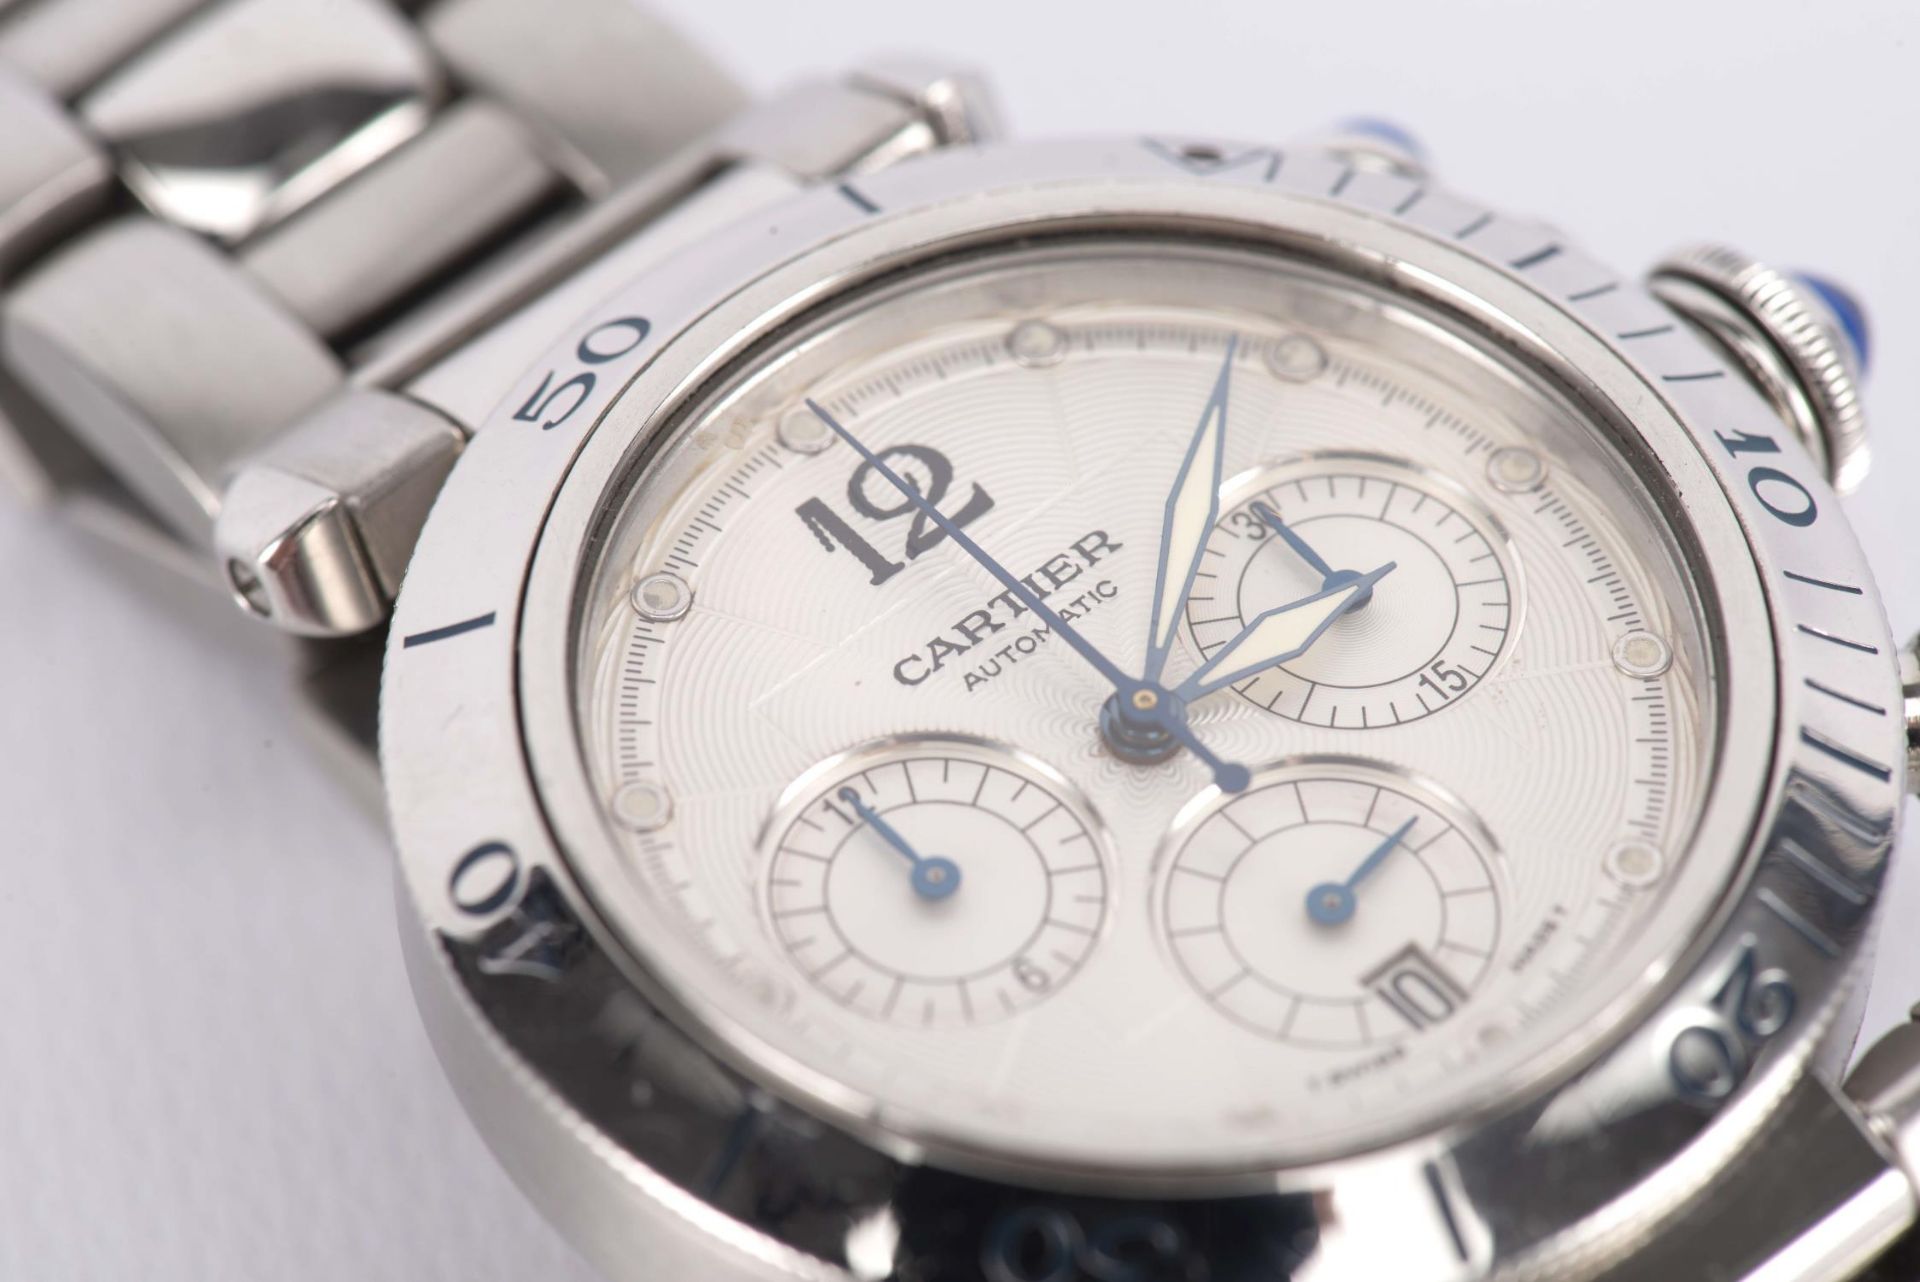 Cartier, montre bracelet ronde modèle Cartier Pasha Seatimer Chronograph 2113, mvt [...] - Image 2 of 5